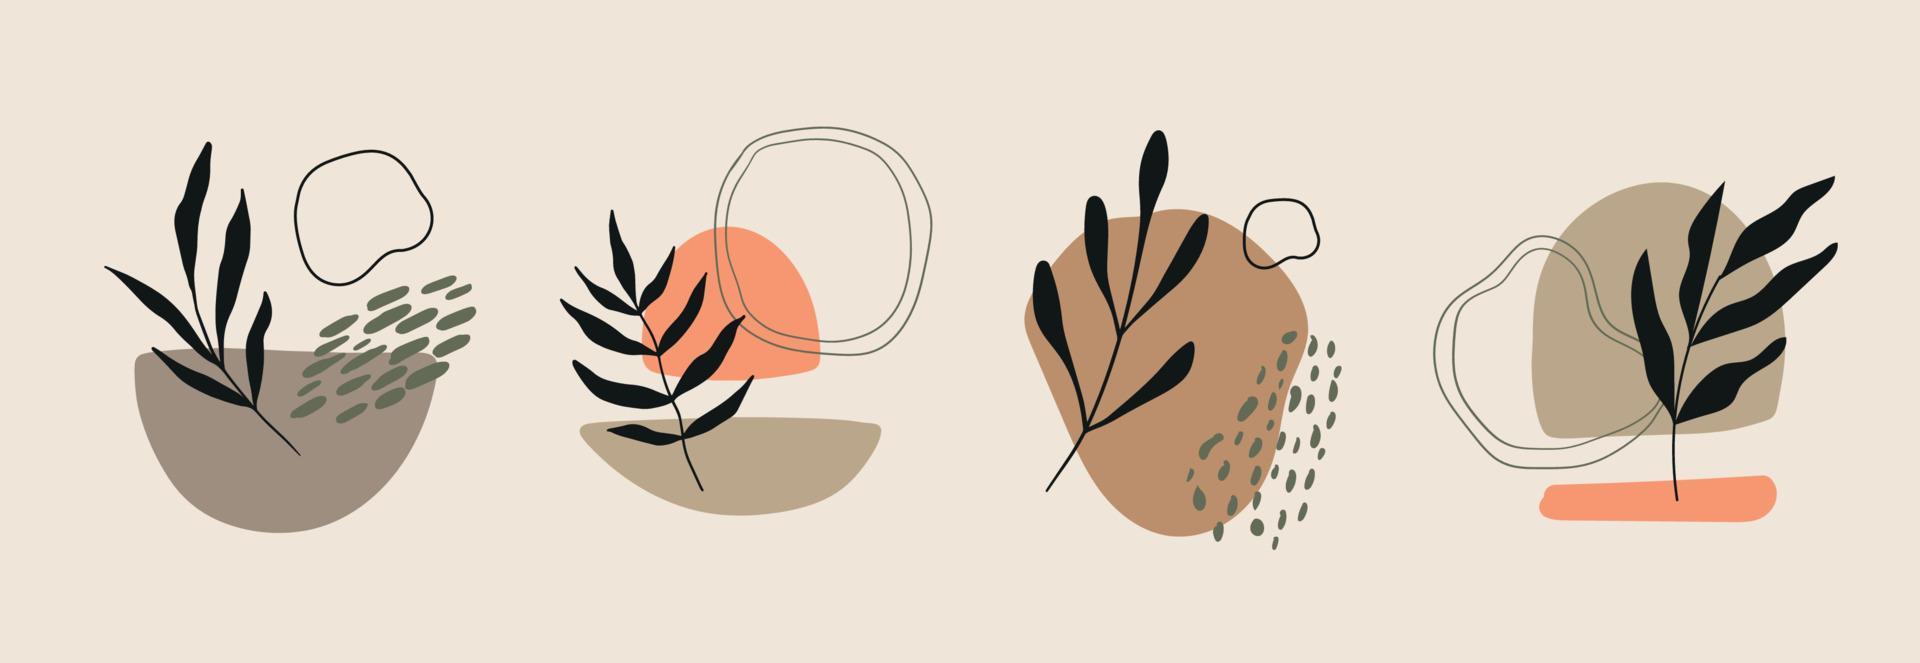 uppsättning av hand dragen olika former och löv. boho abstrakt samtida modern trendig vektor illustration. isolerat element för social media och affisch